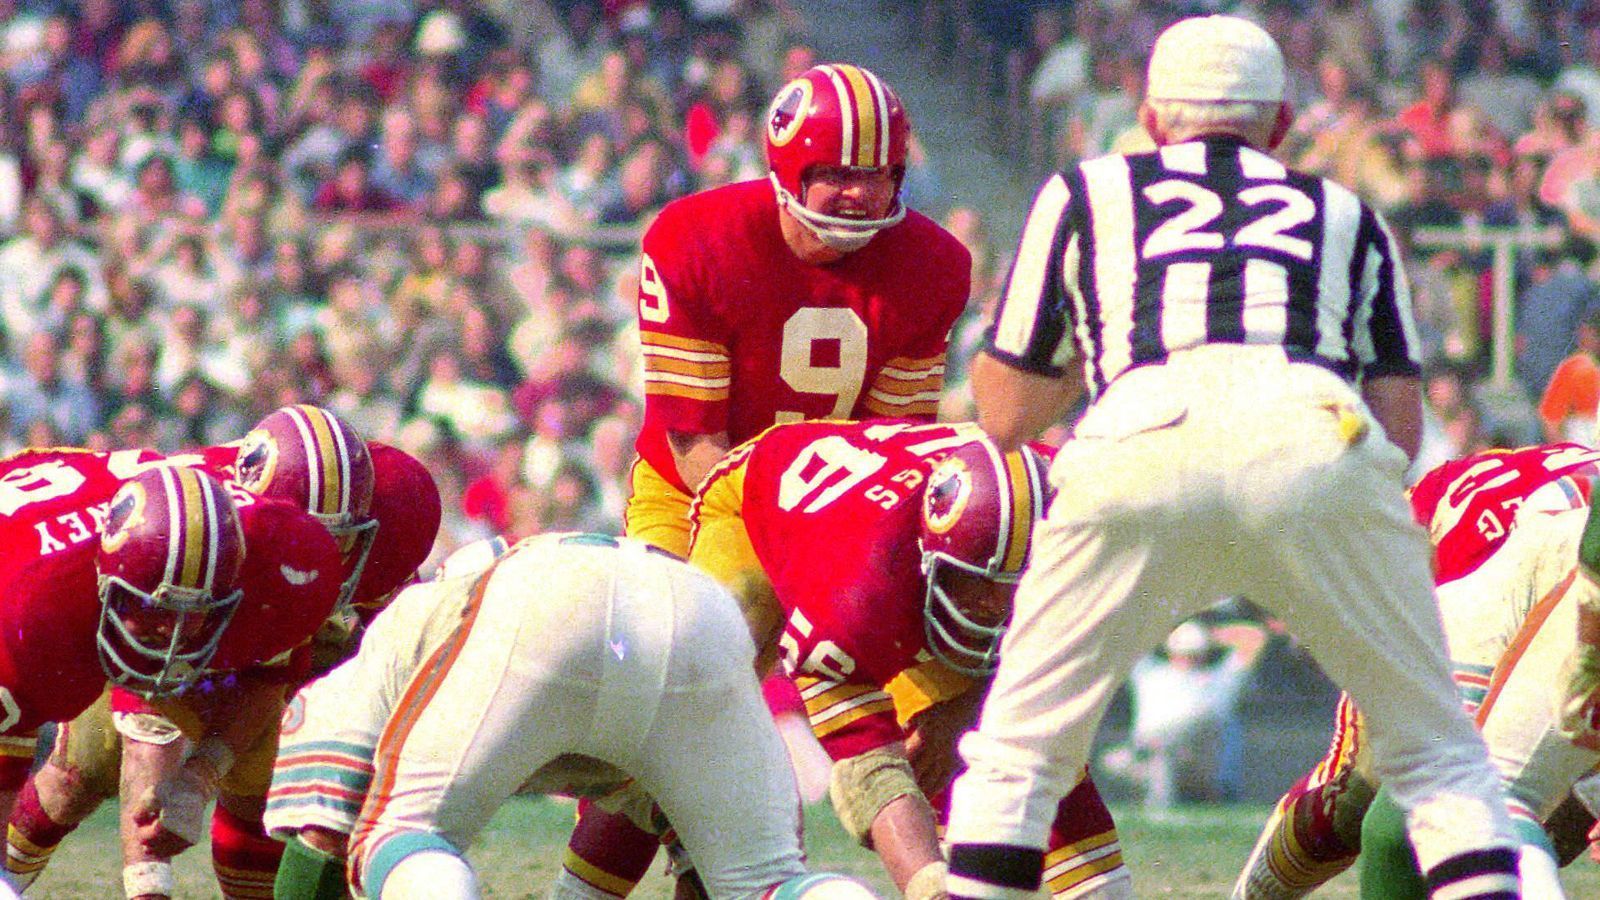 
                <strong>Platz 1: Washington Redskins vs New York Giants 72:41</strong><br>
                113 Punkte - das ist das Maß der Dinge in der NFL. Am 27. November 1966 - also ziemlich genau 52 Jahre vor dem historischen Rams-Chiefs-Spiel findet diese Rekord-Partie in Washington statt. Die Redskins um Quarterback Sonny Jurgensen deklassieren die Giants mit 72:41. Insgesamt bekommen die Zuschauer 16 Touchdowns zu sehen.
              